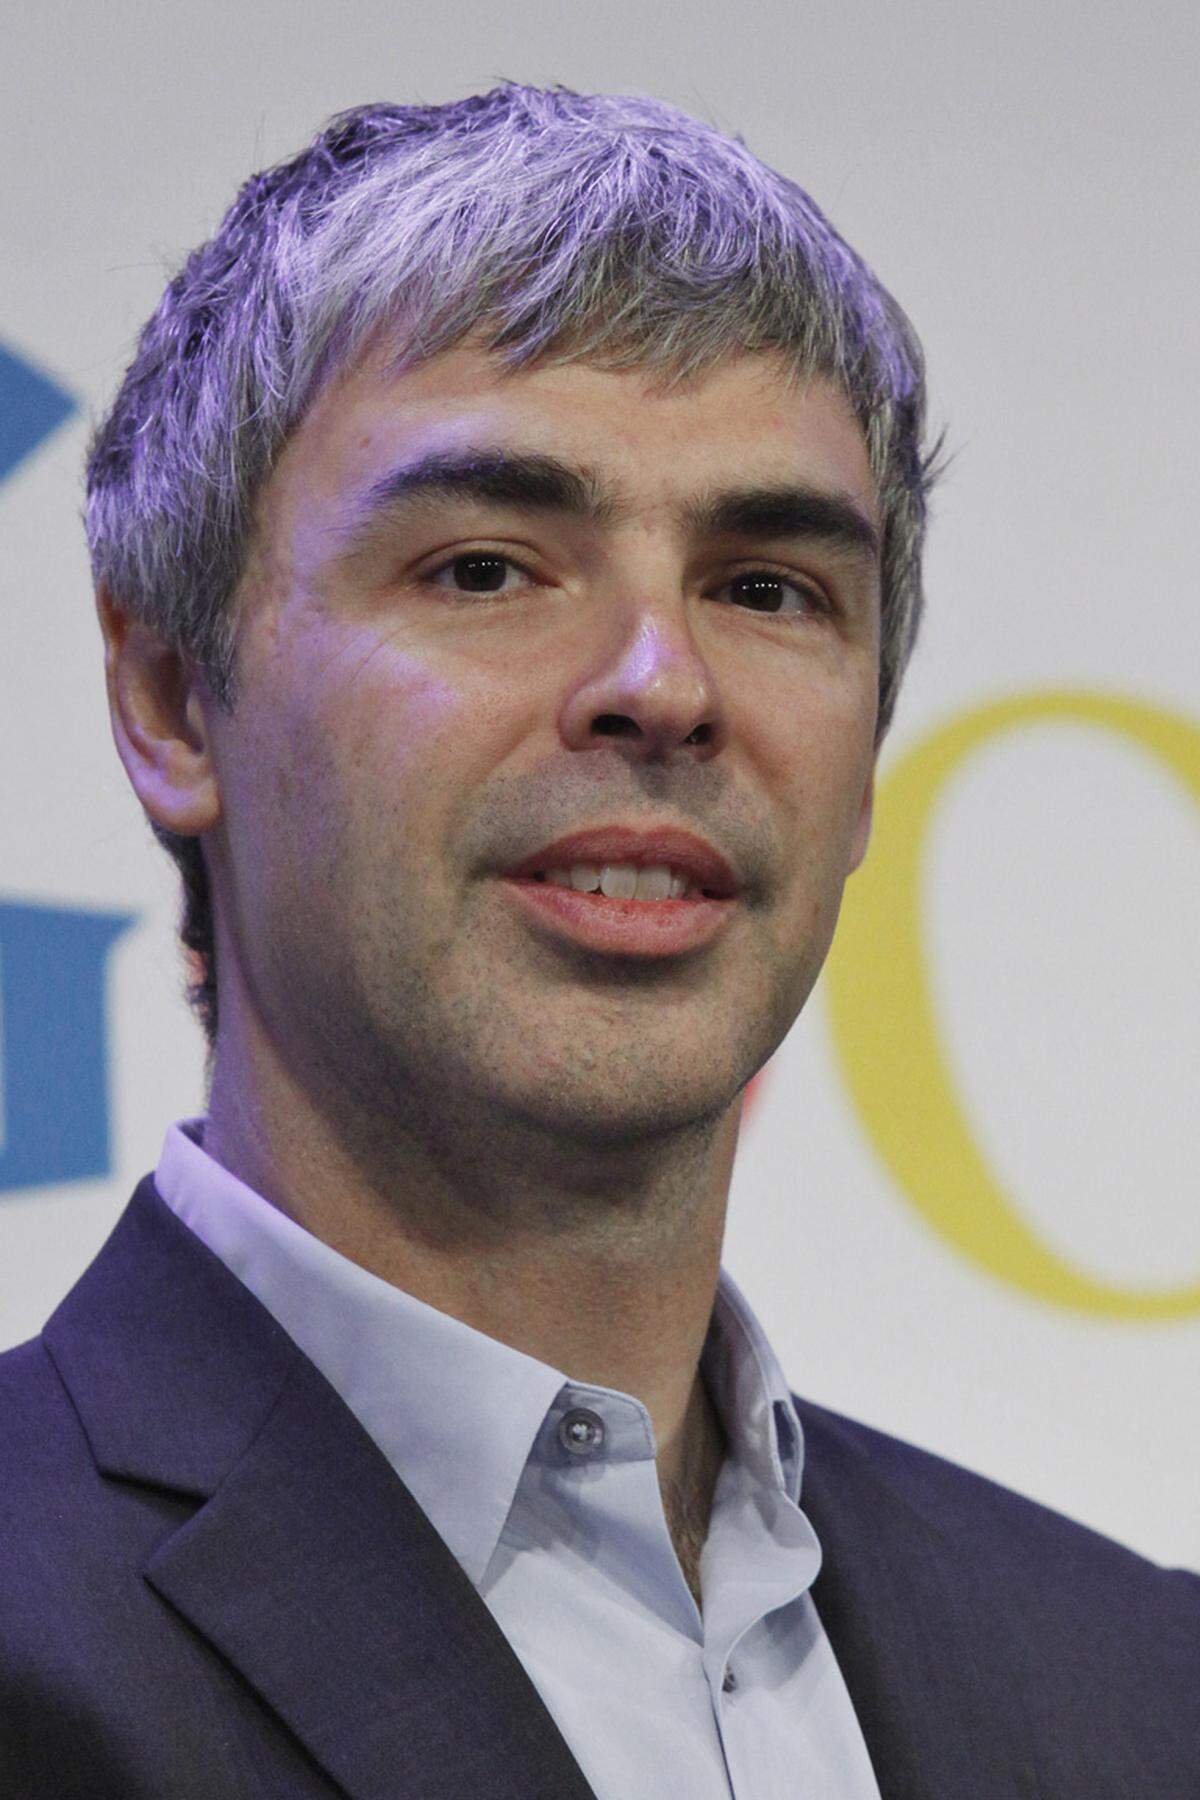 Der zweite Google-Gründer Larry Page schafft es mit 32,3 Milliarden Dollar auf Platz 3 im Forbes-Ranking.